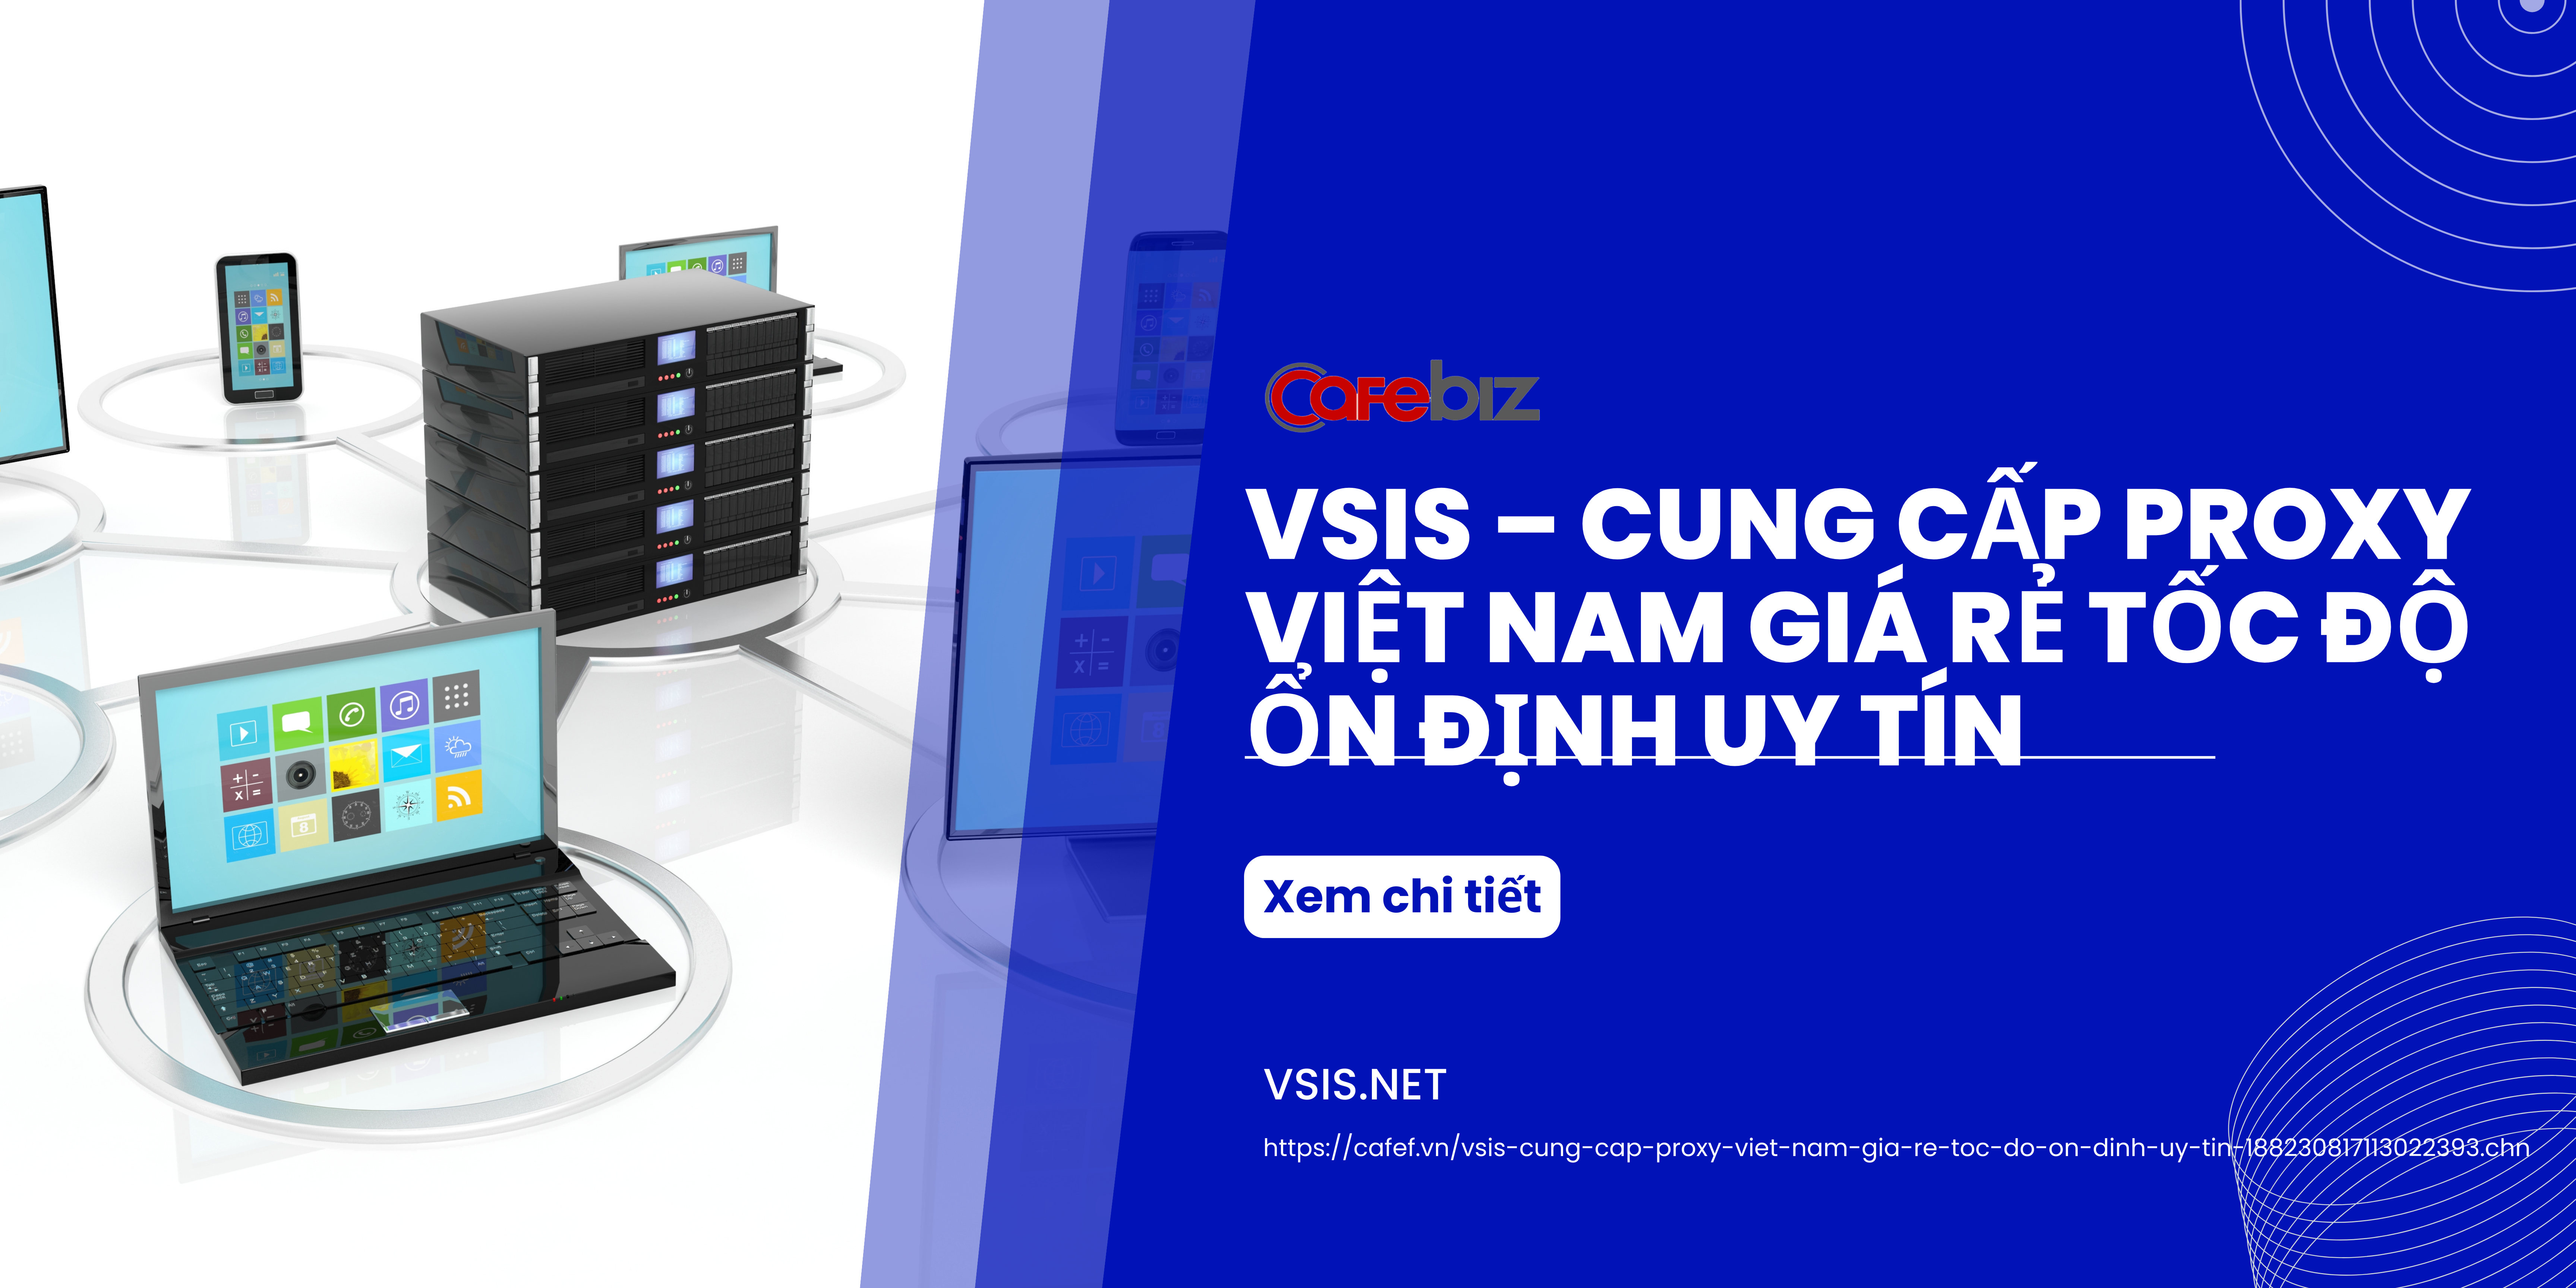 VSIS – Cung cấp proxy Việt Nam giá rẻ tốc độ ổn định uy tín